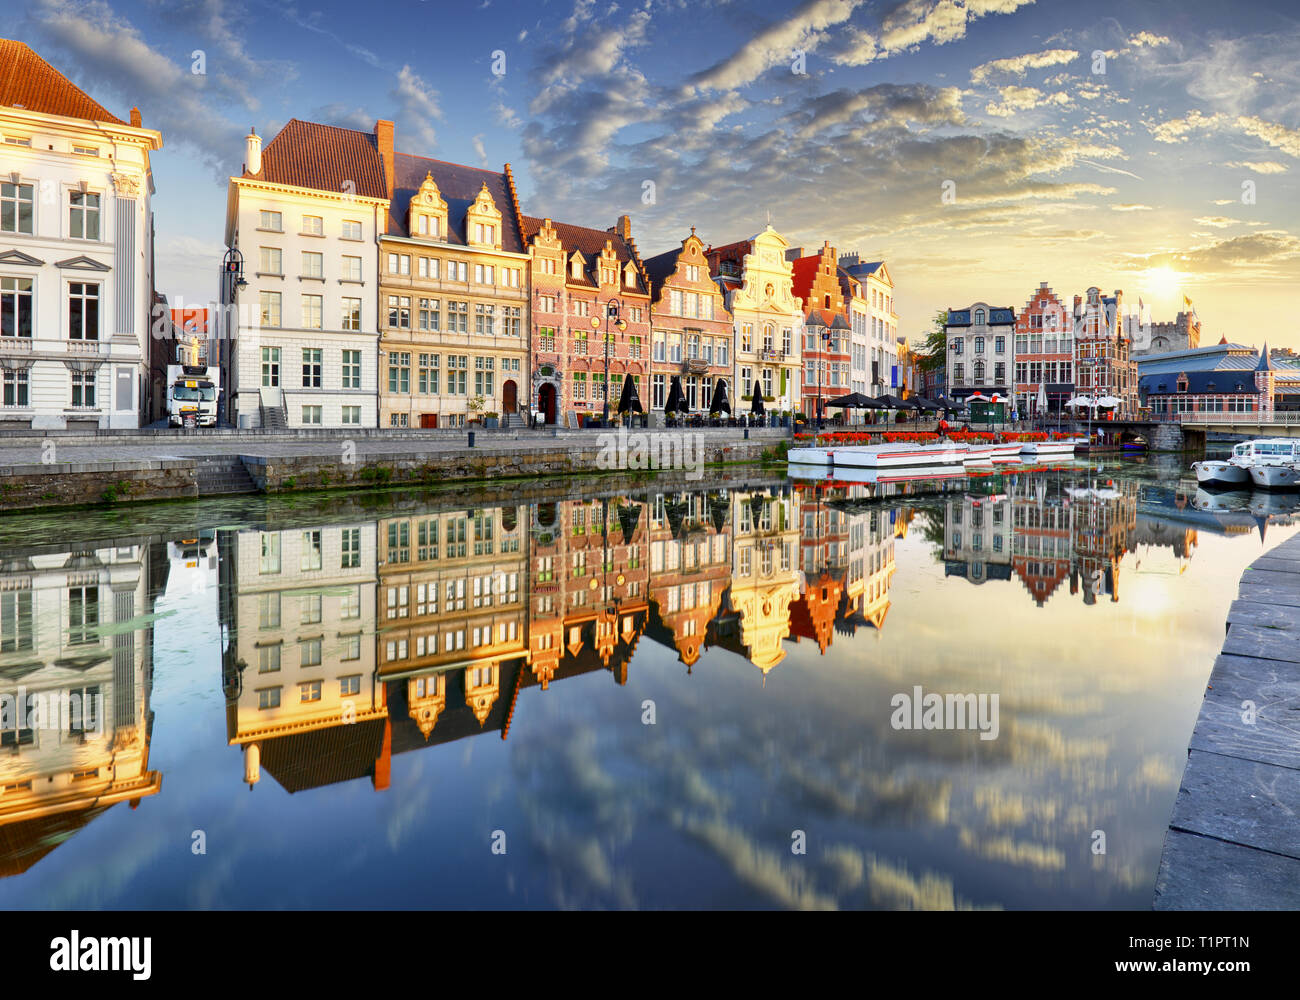 Gent Stadt mit alten Haus bei Sonnenuntergang, Belgien Stockfoto